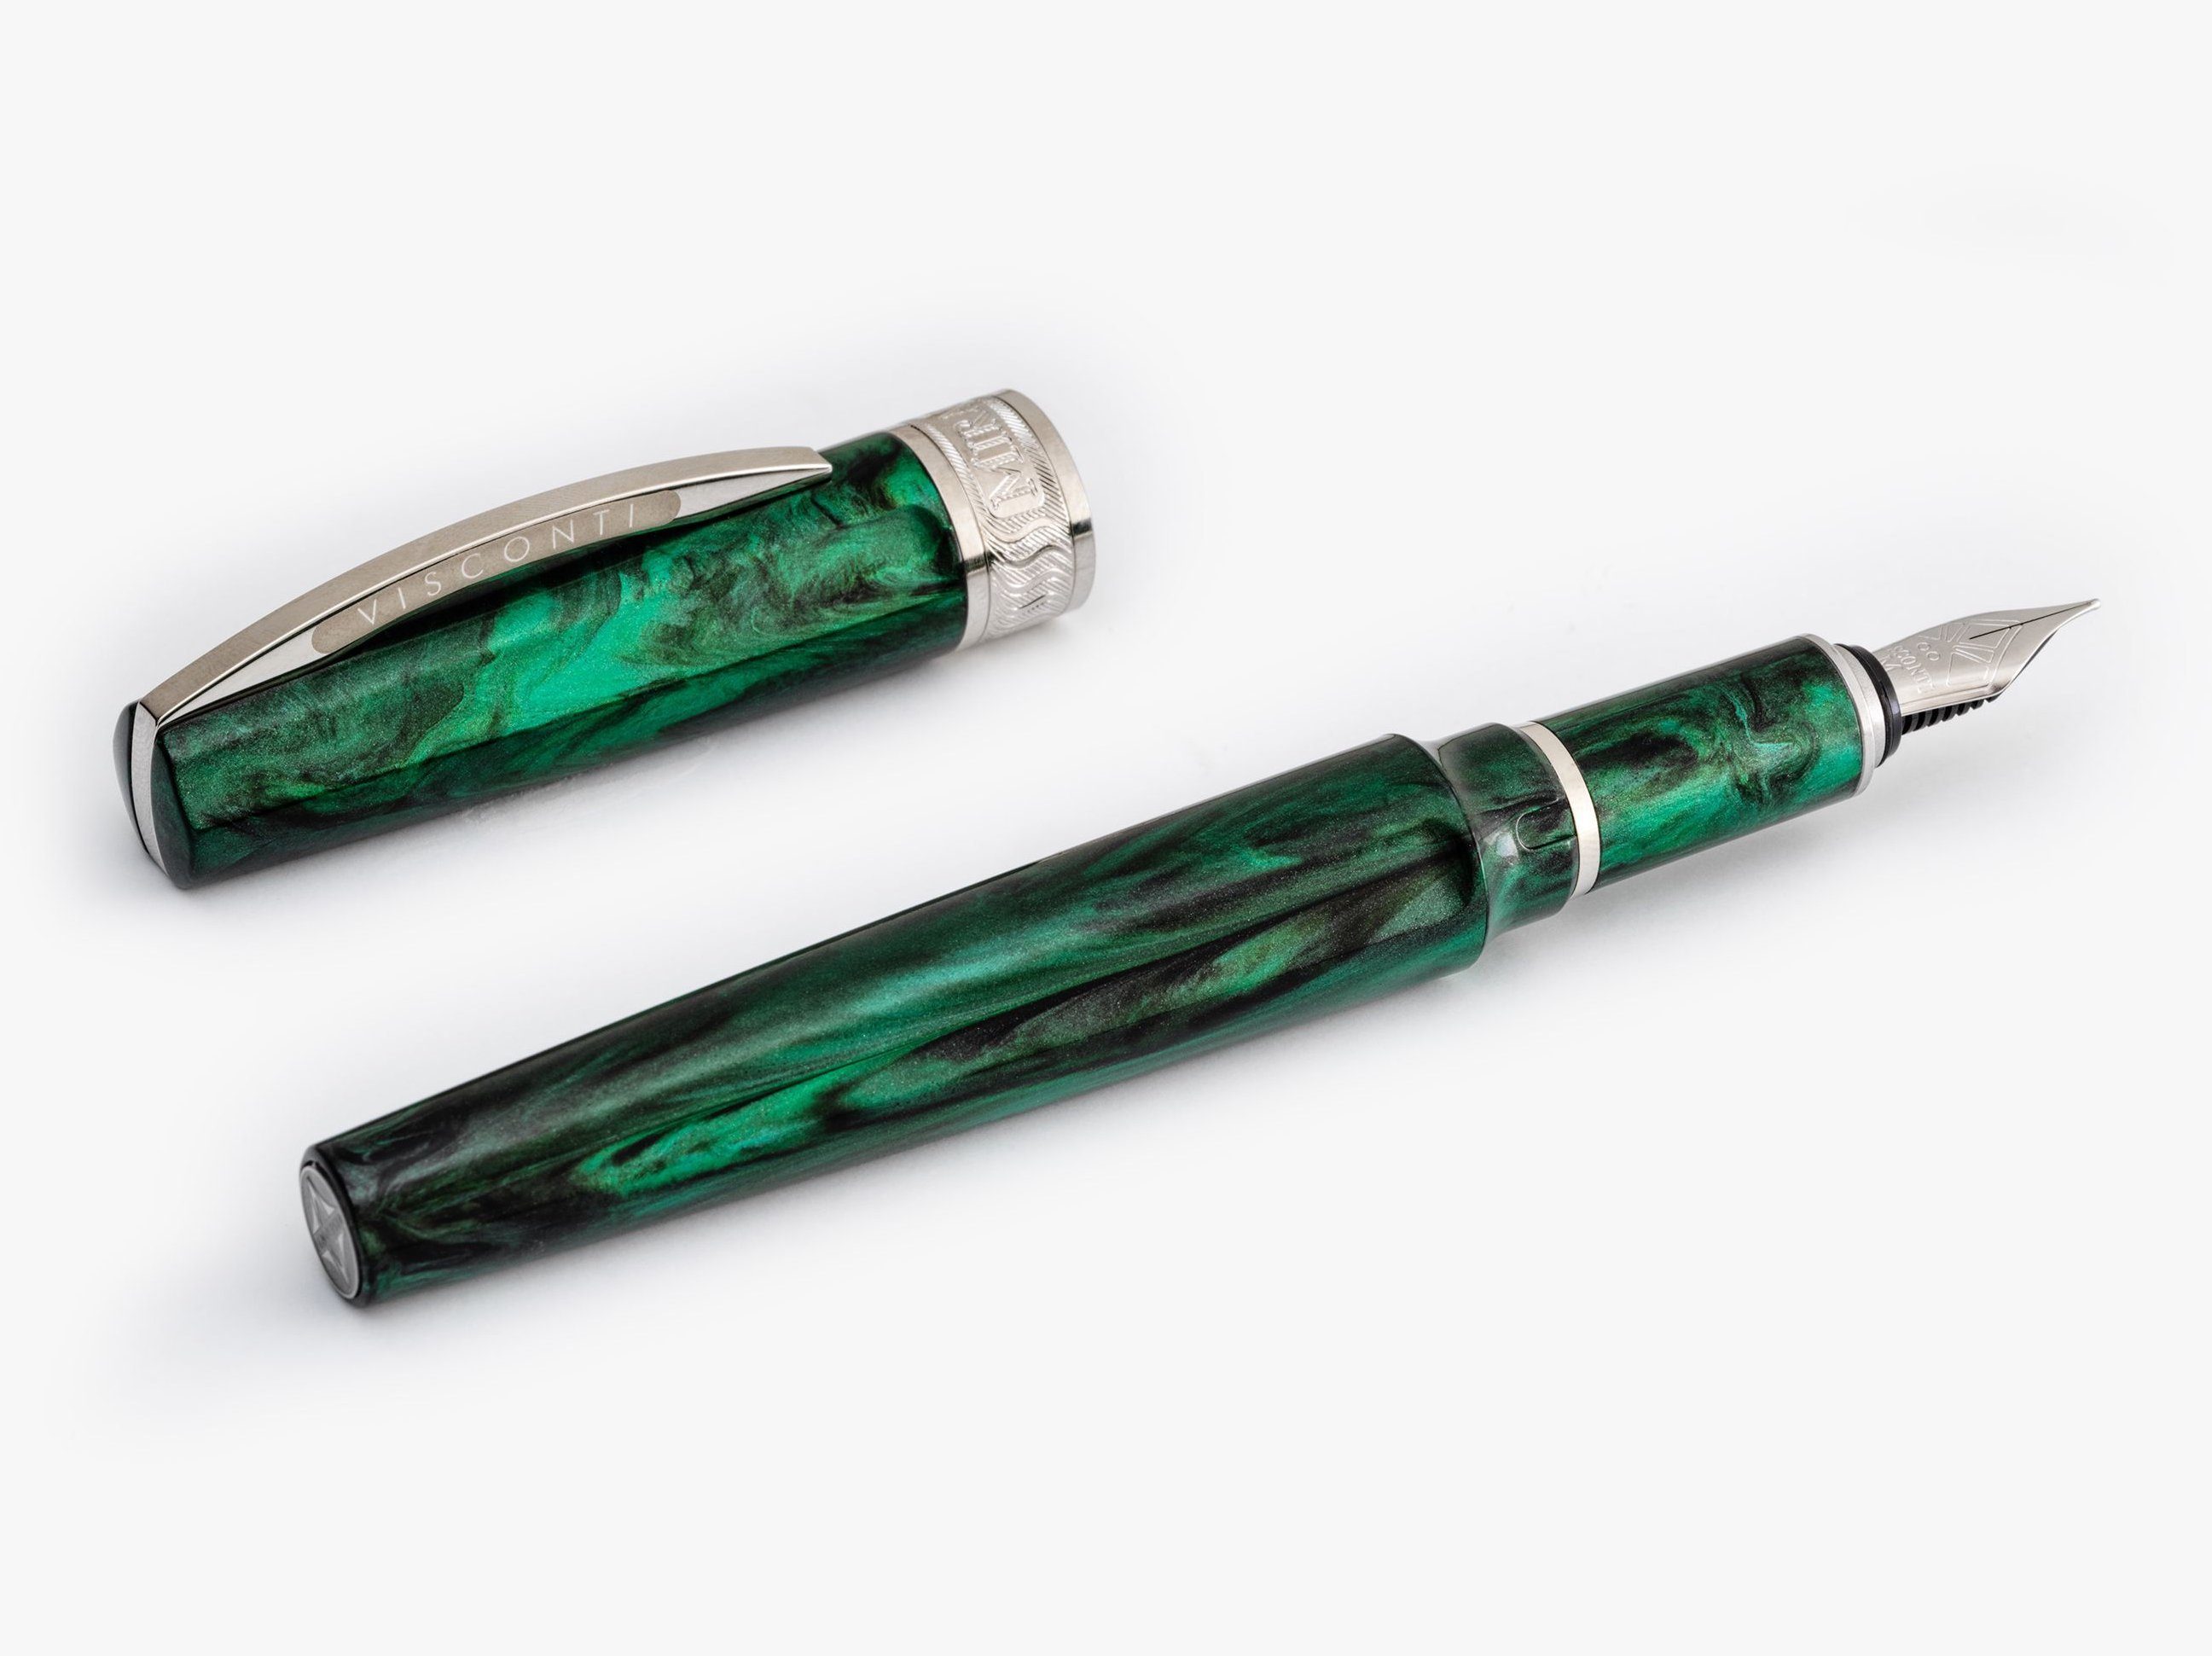 Visconti Füllfederhalter Visconti Mirage Füllfederhalter Emerald Fountain Pen verschiedene, (kein Set) Emerald B